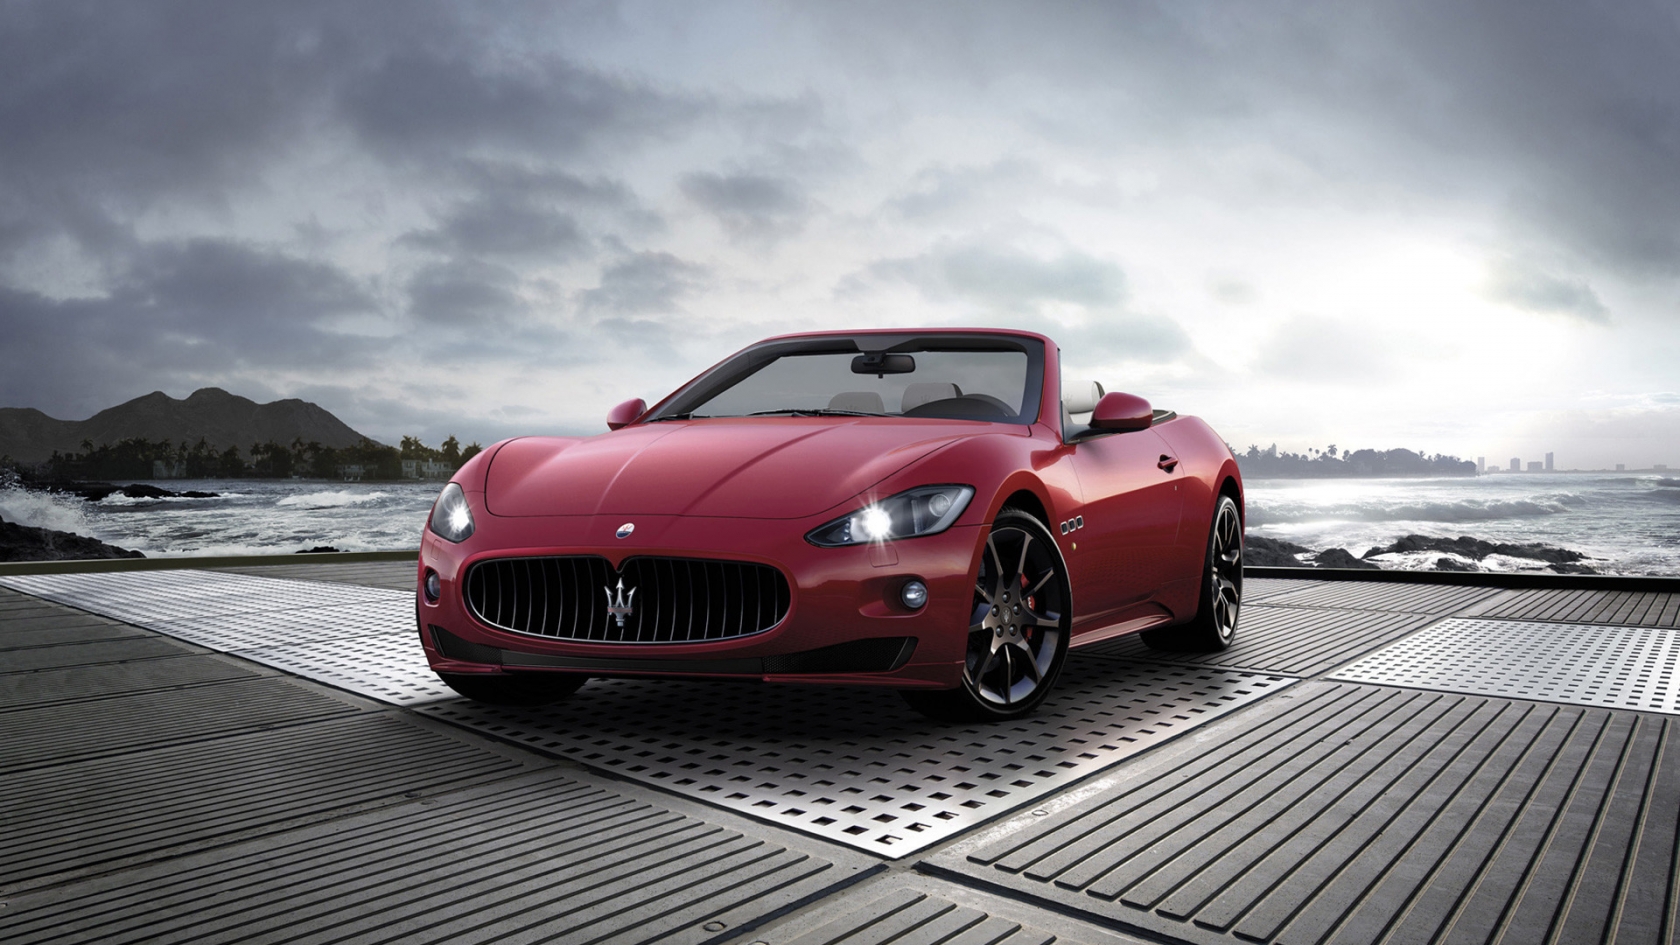 2011 Maserati GranCabrio Sport for 1680 x 945 HDTV resolution